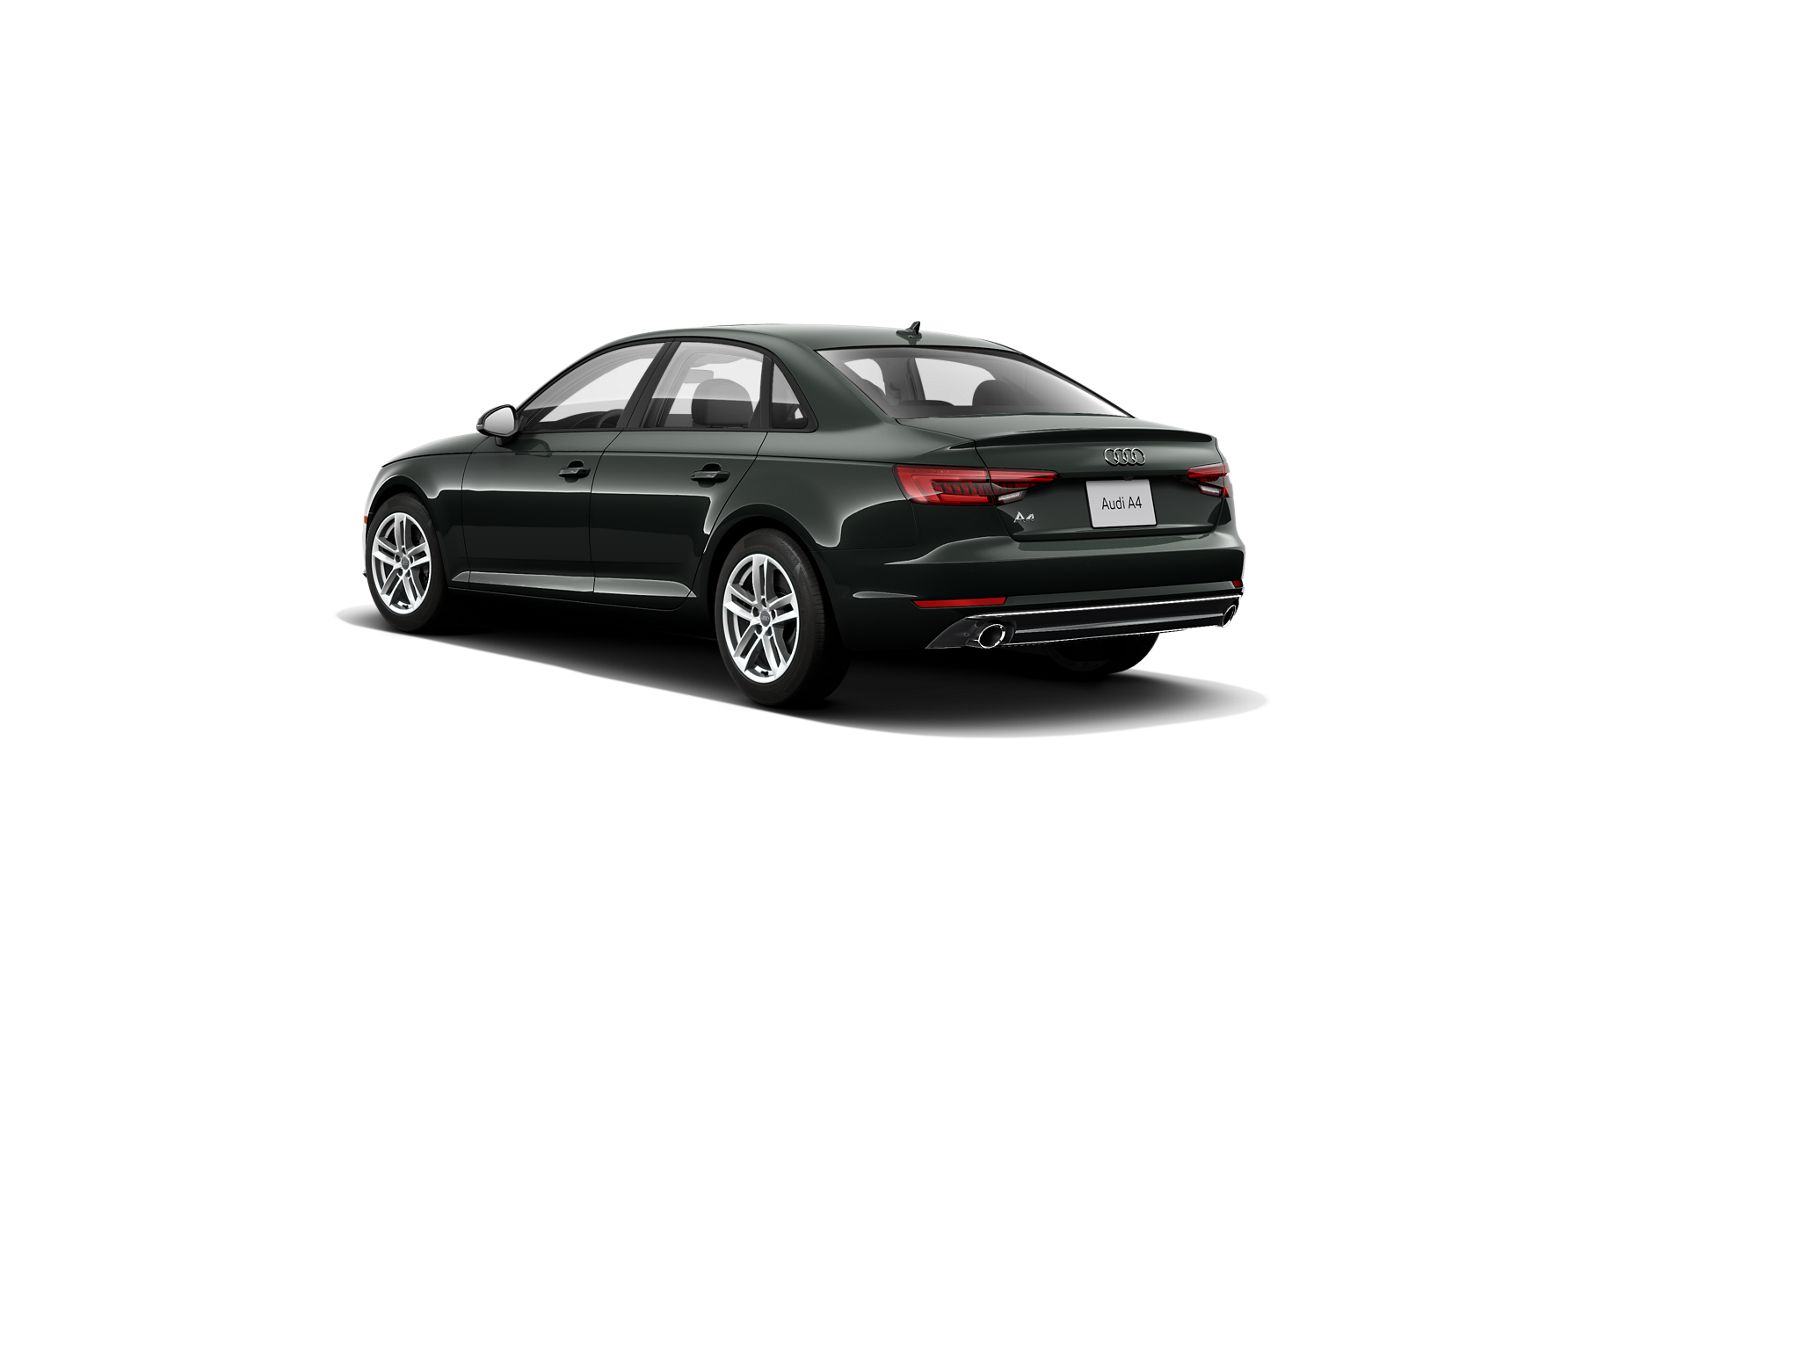 Audi A4 Premium Plus 2017 rear cross view